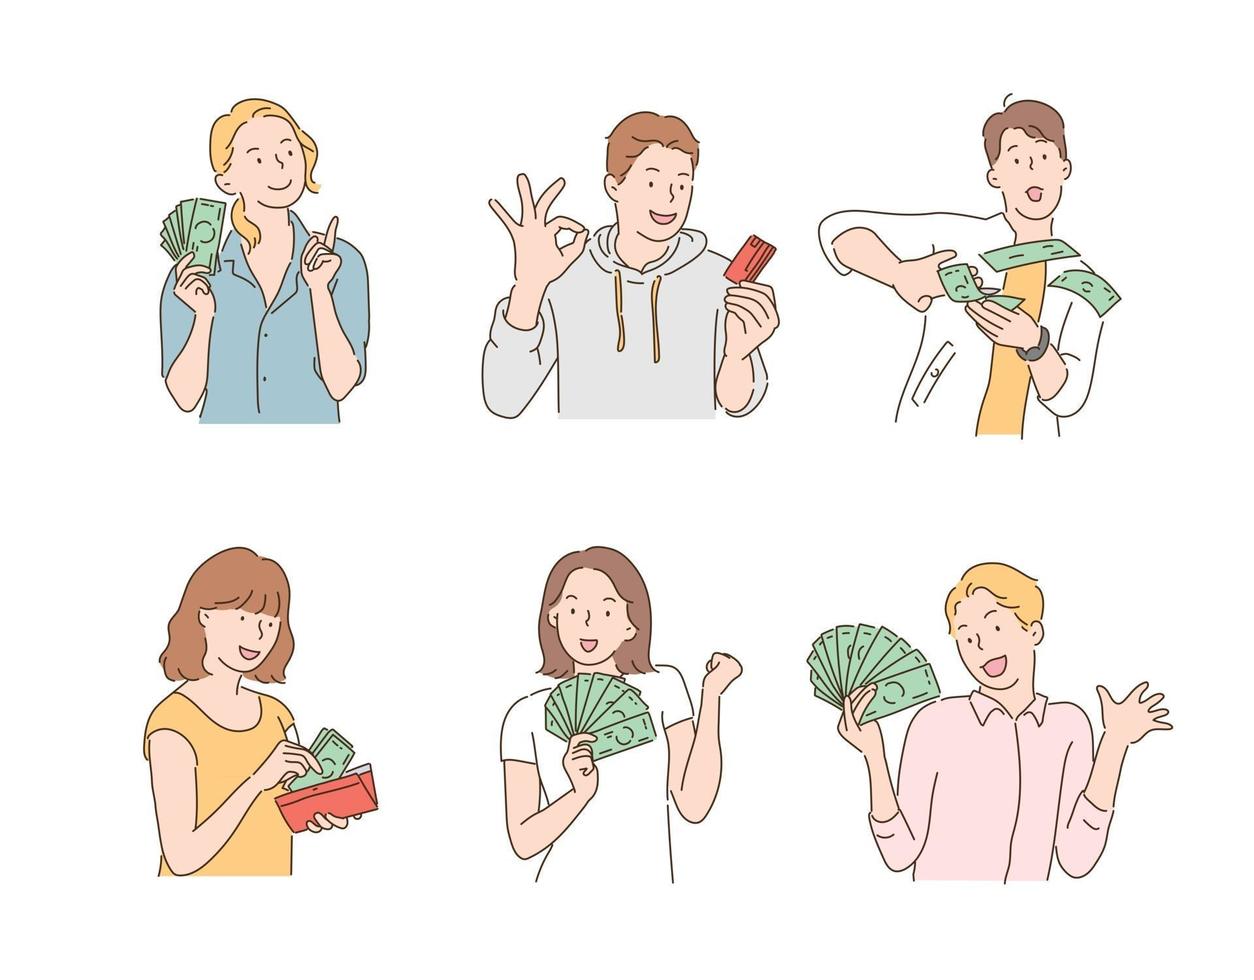 persone felici con un sacco di soldi nelle loro mani. illustrazioni di disegno vettoriale stile disegnato a mano.